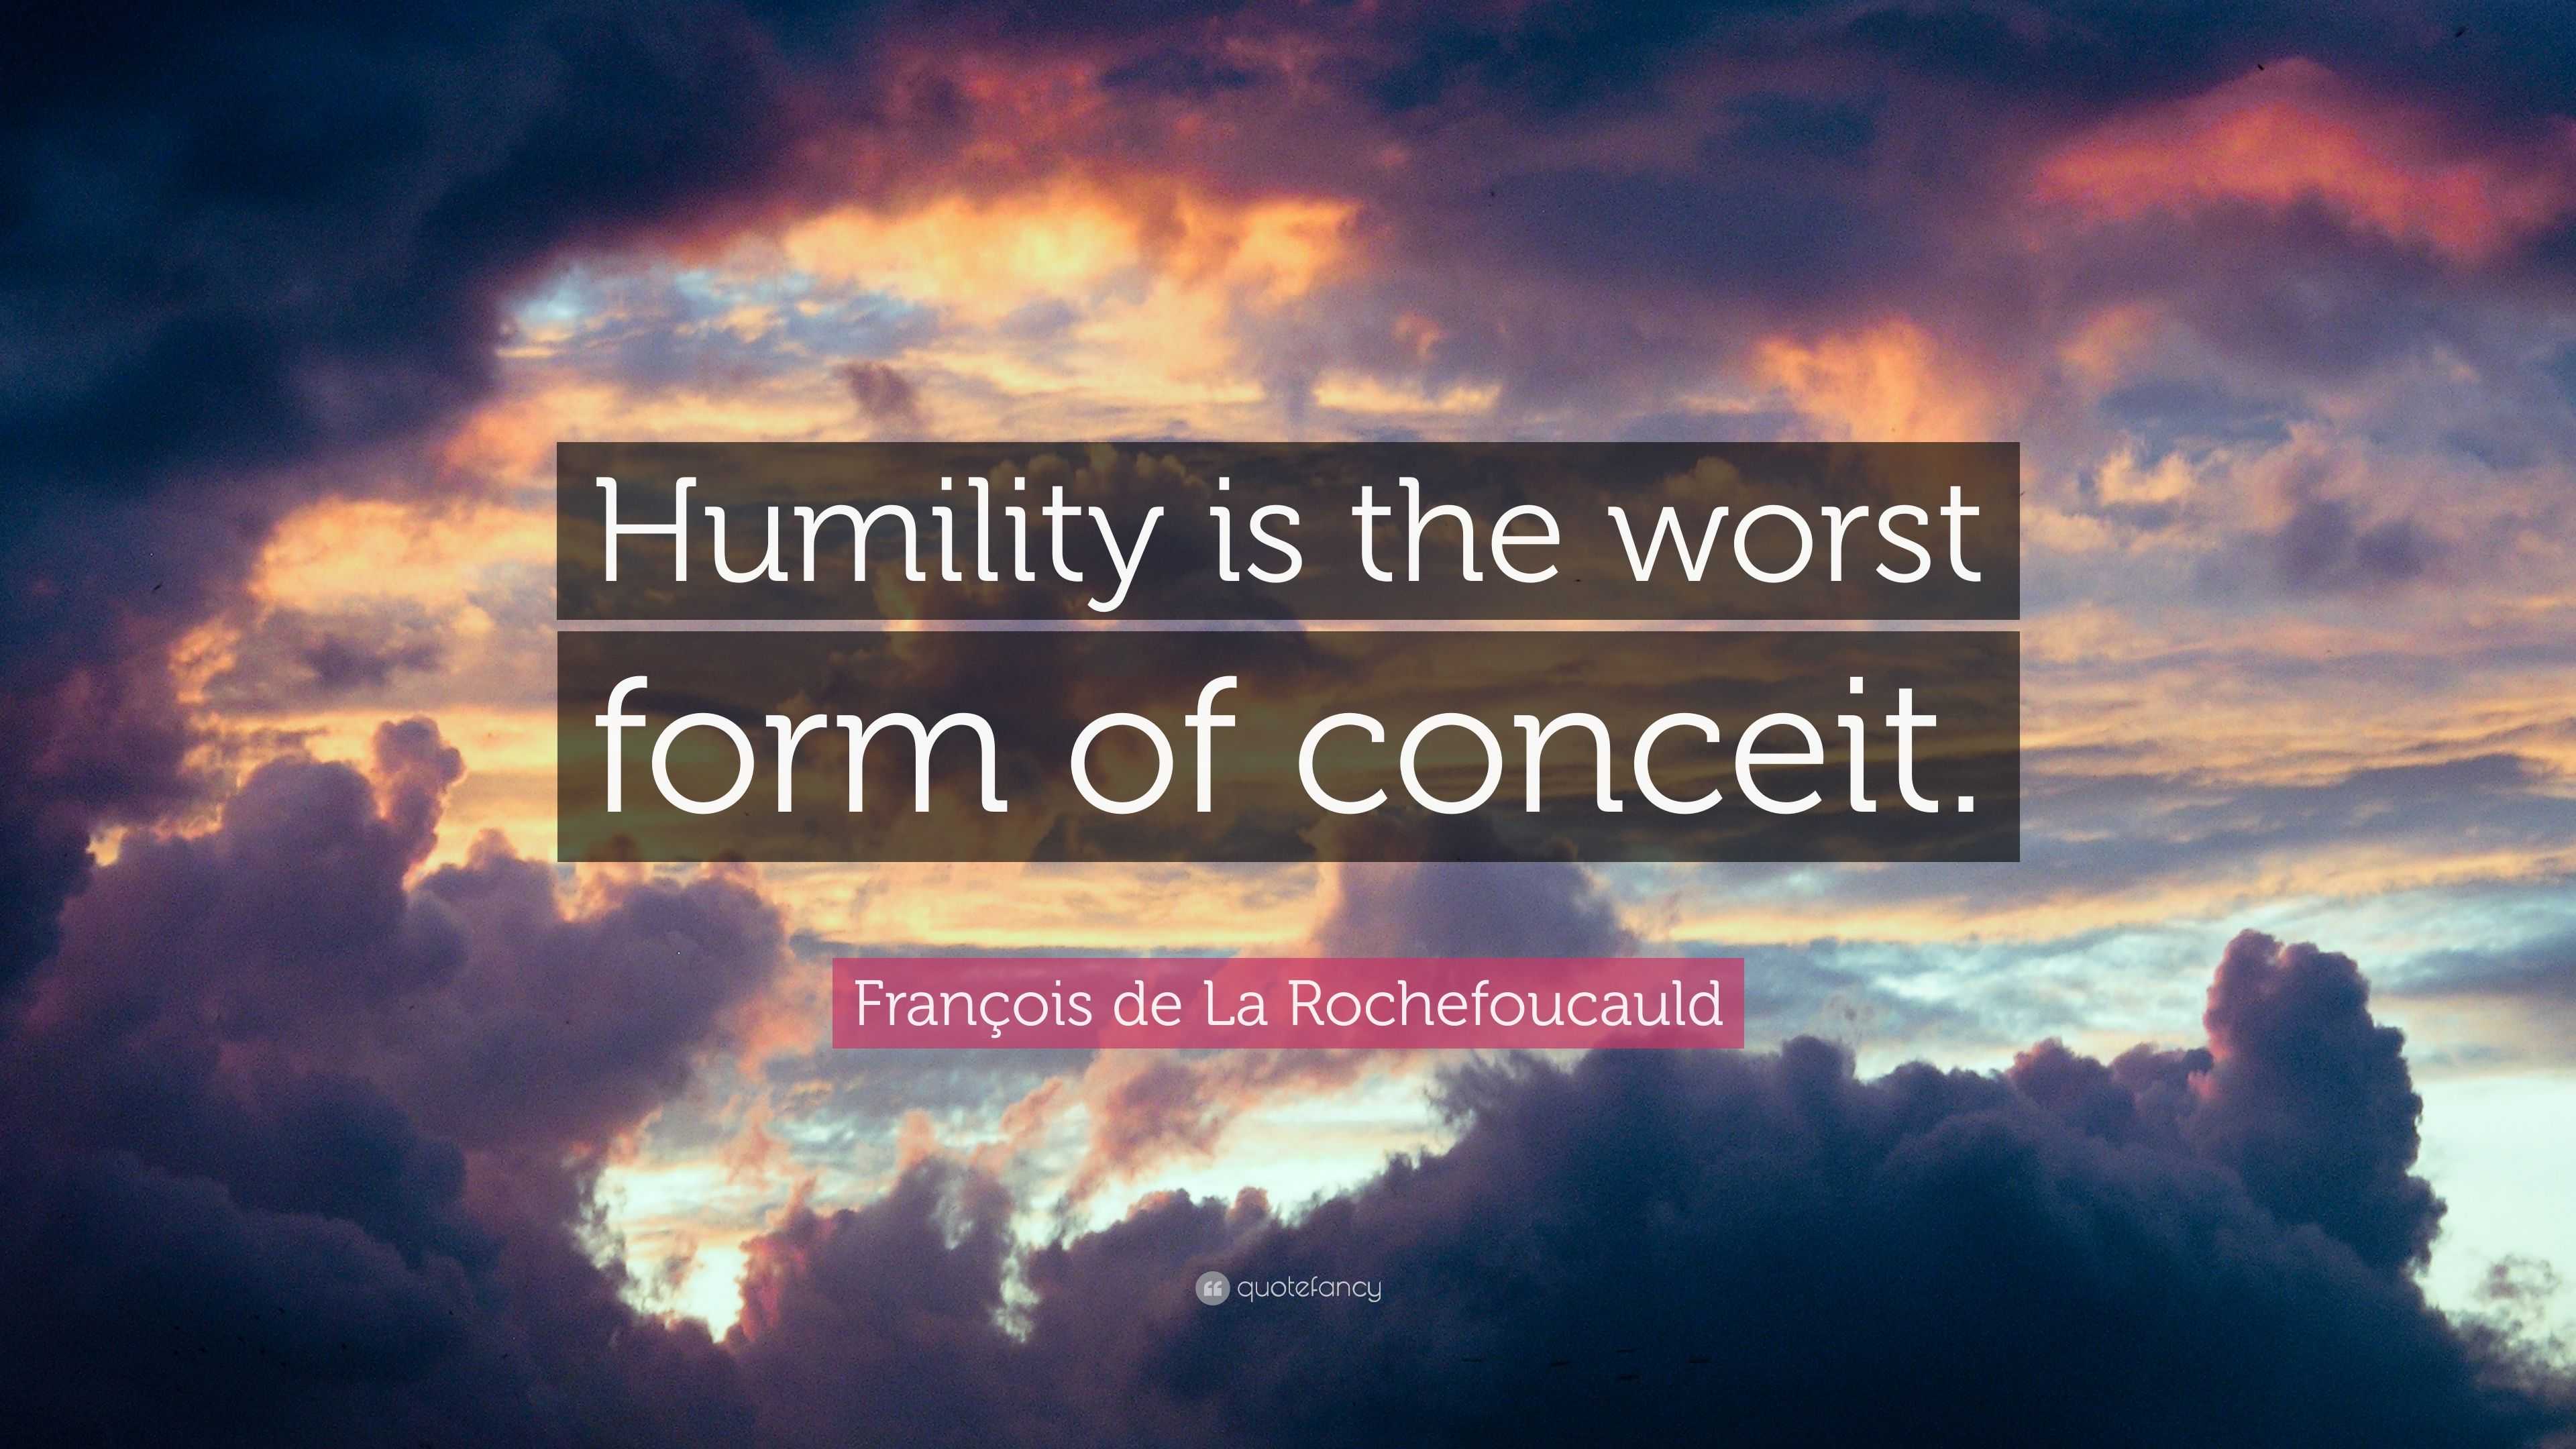 François de La Rochefoucauld Quote: “Humility is the worst form of ...